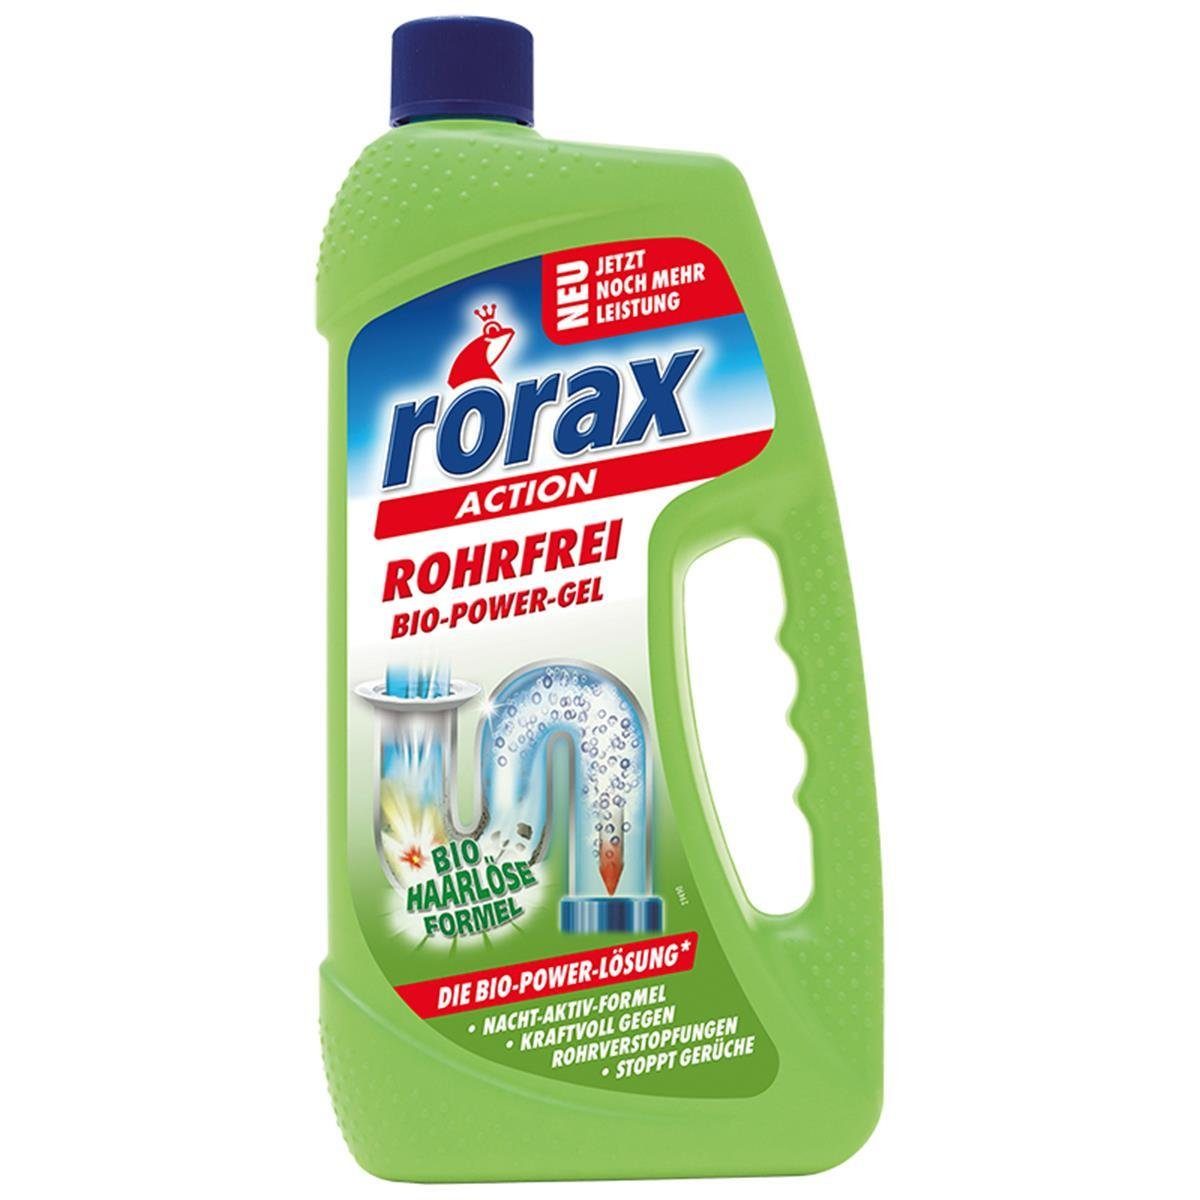 rorax rorax Rohrfrei Bio-Power-Gel 1 Liter - Löst selbst Haare auf Rohrreiniger | Rohrreiniger